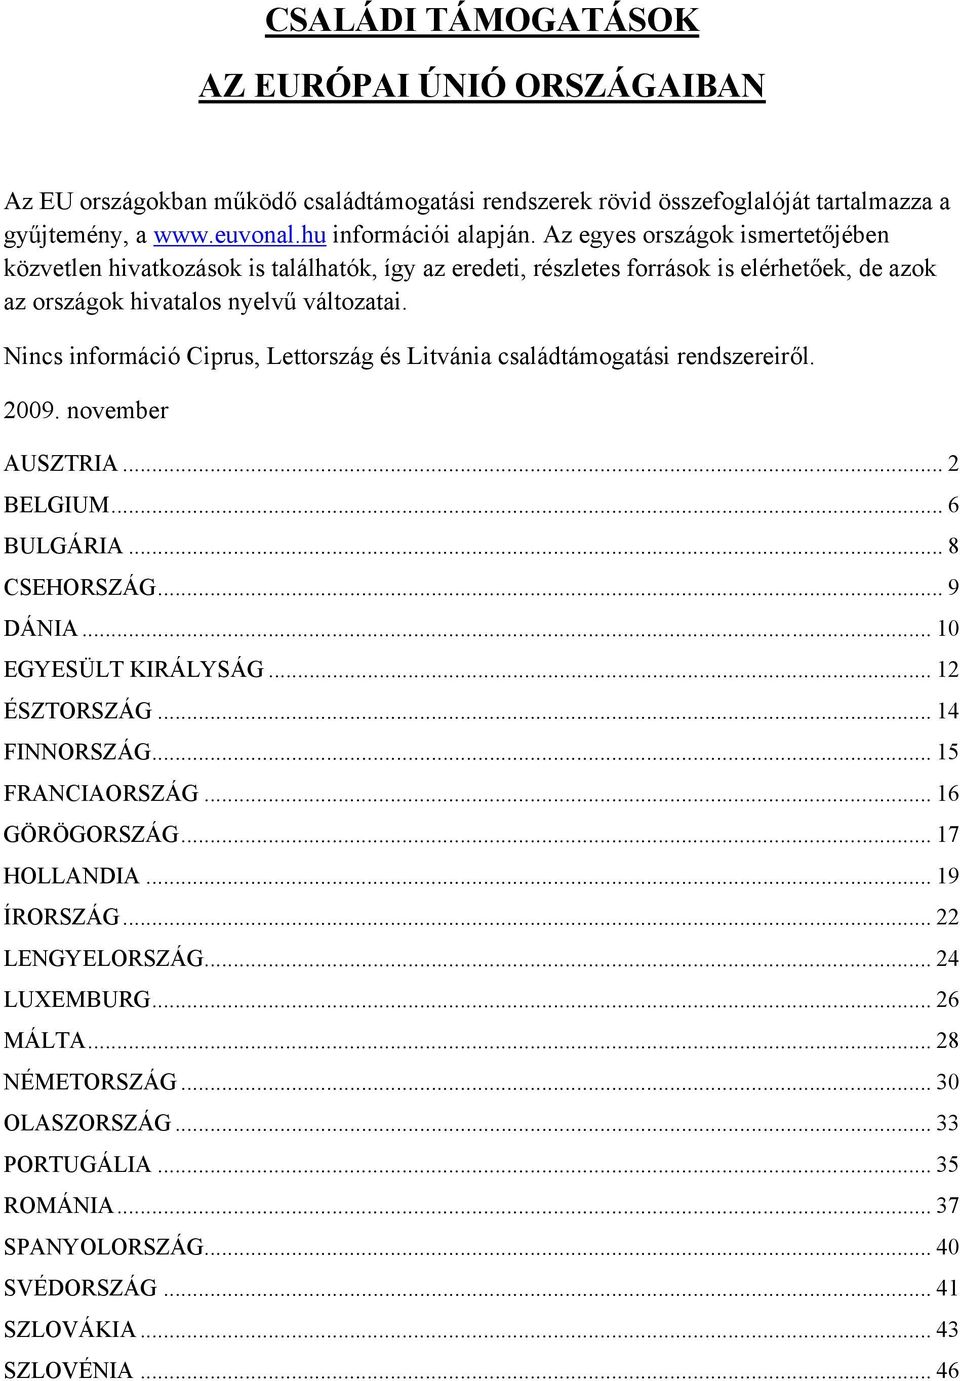 Nincs információ Ciprus, Lettország és Litvánia családtámogatási rendszereiről. 2009. november AUSZTRIA... 2 BELGIUM... 6 BULGÁRIA... 8 CSEHORSZÁG... 9 DÁNIA... 10 EGYESÜLT KIRÁLYSÁG... 12 ÉSZTORSZÁG.